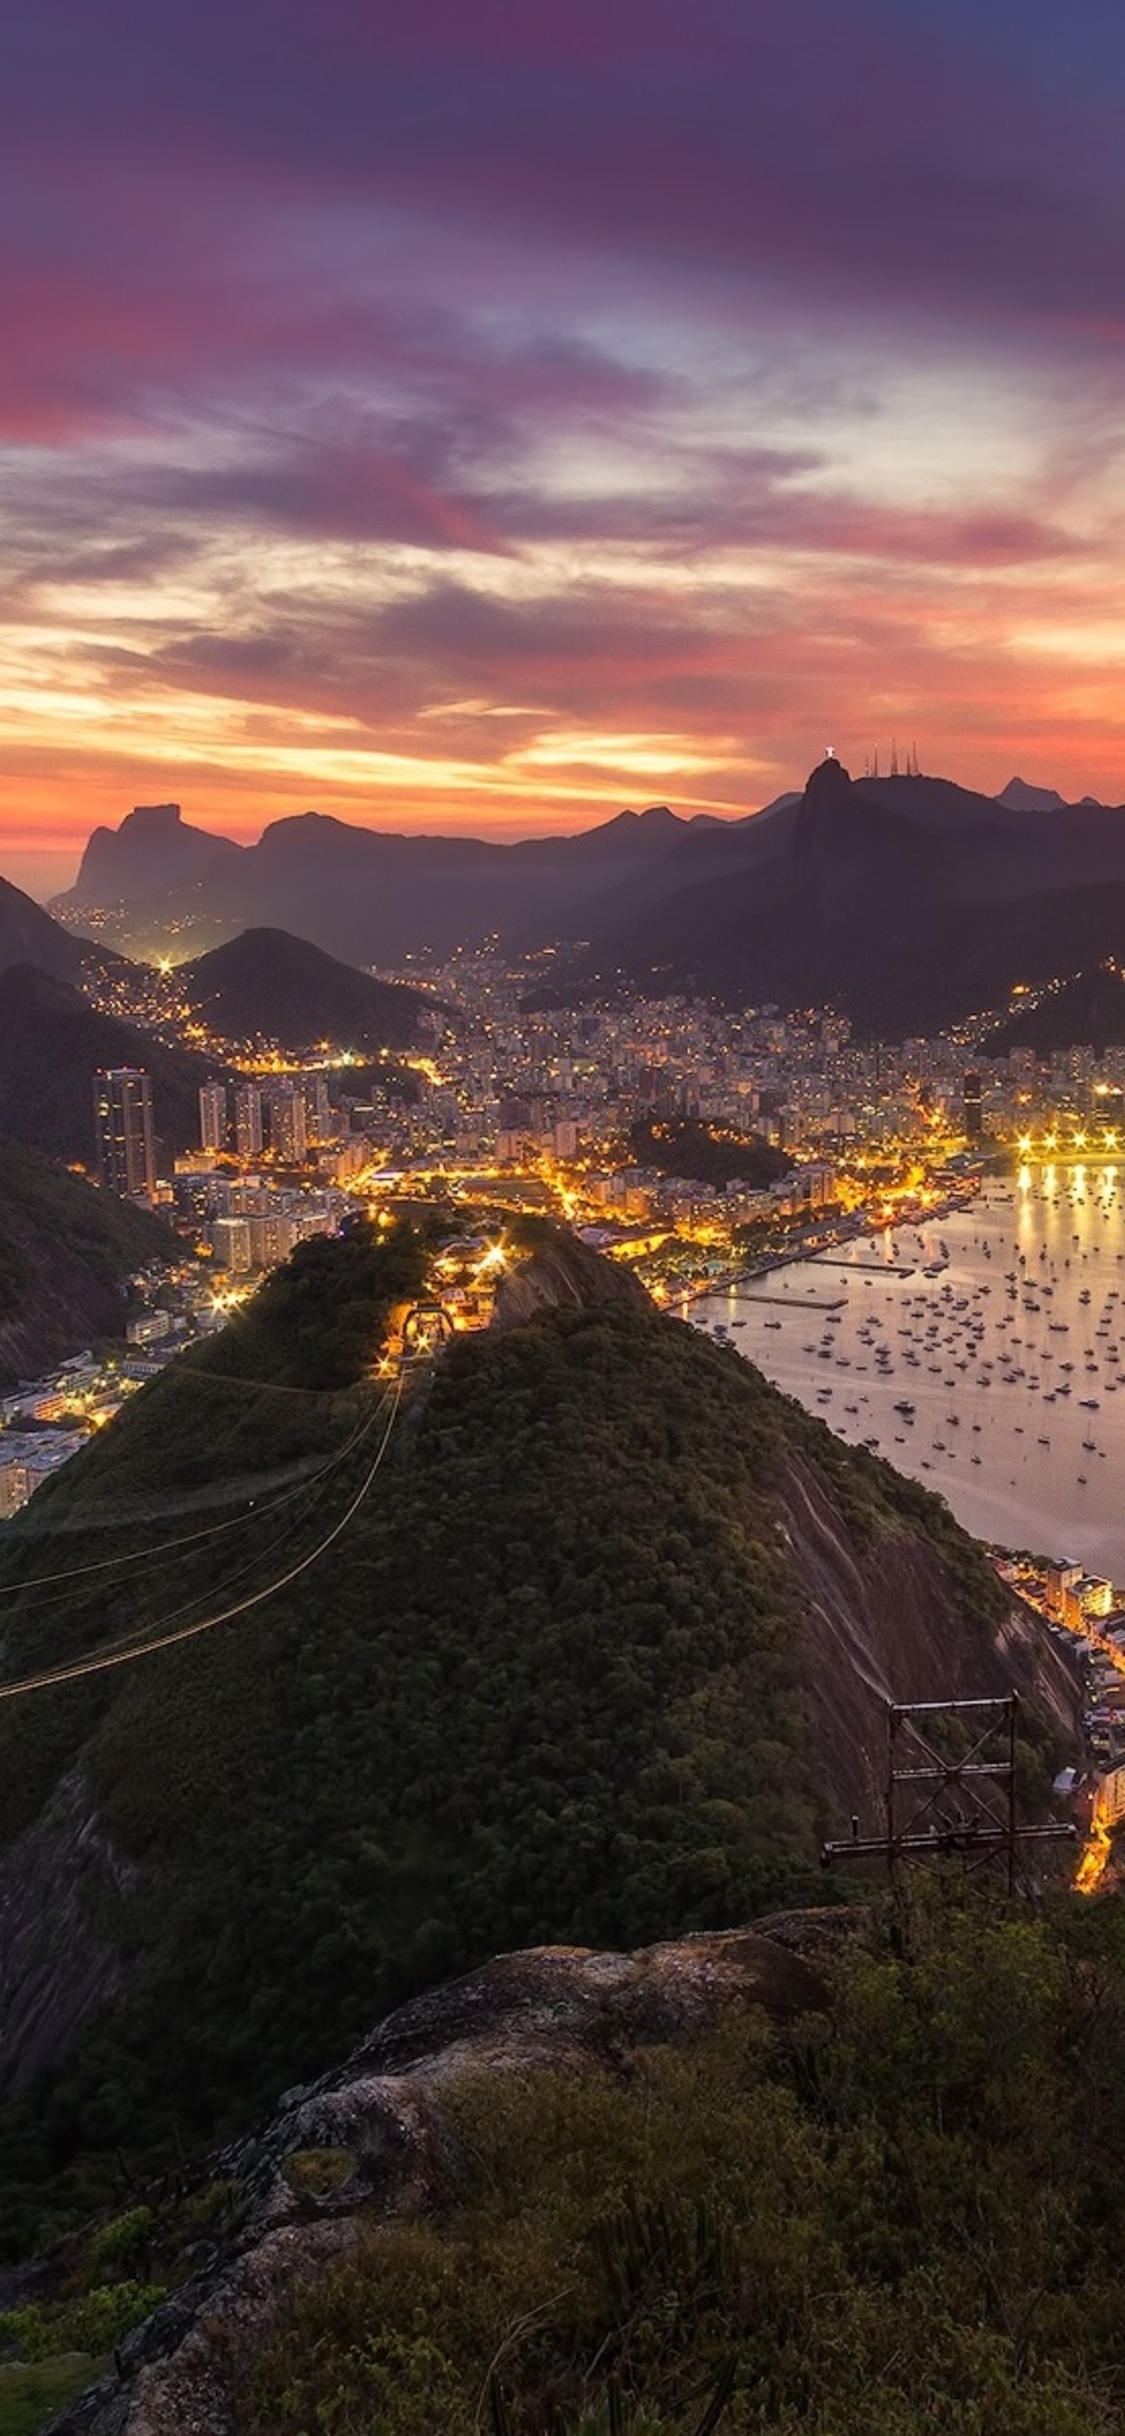 Rio de Janeiro, Cityscape, Evening sunset, iPhone wallpapers, 1130x2440 HD Handy